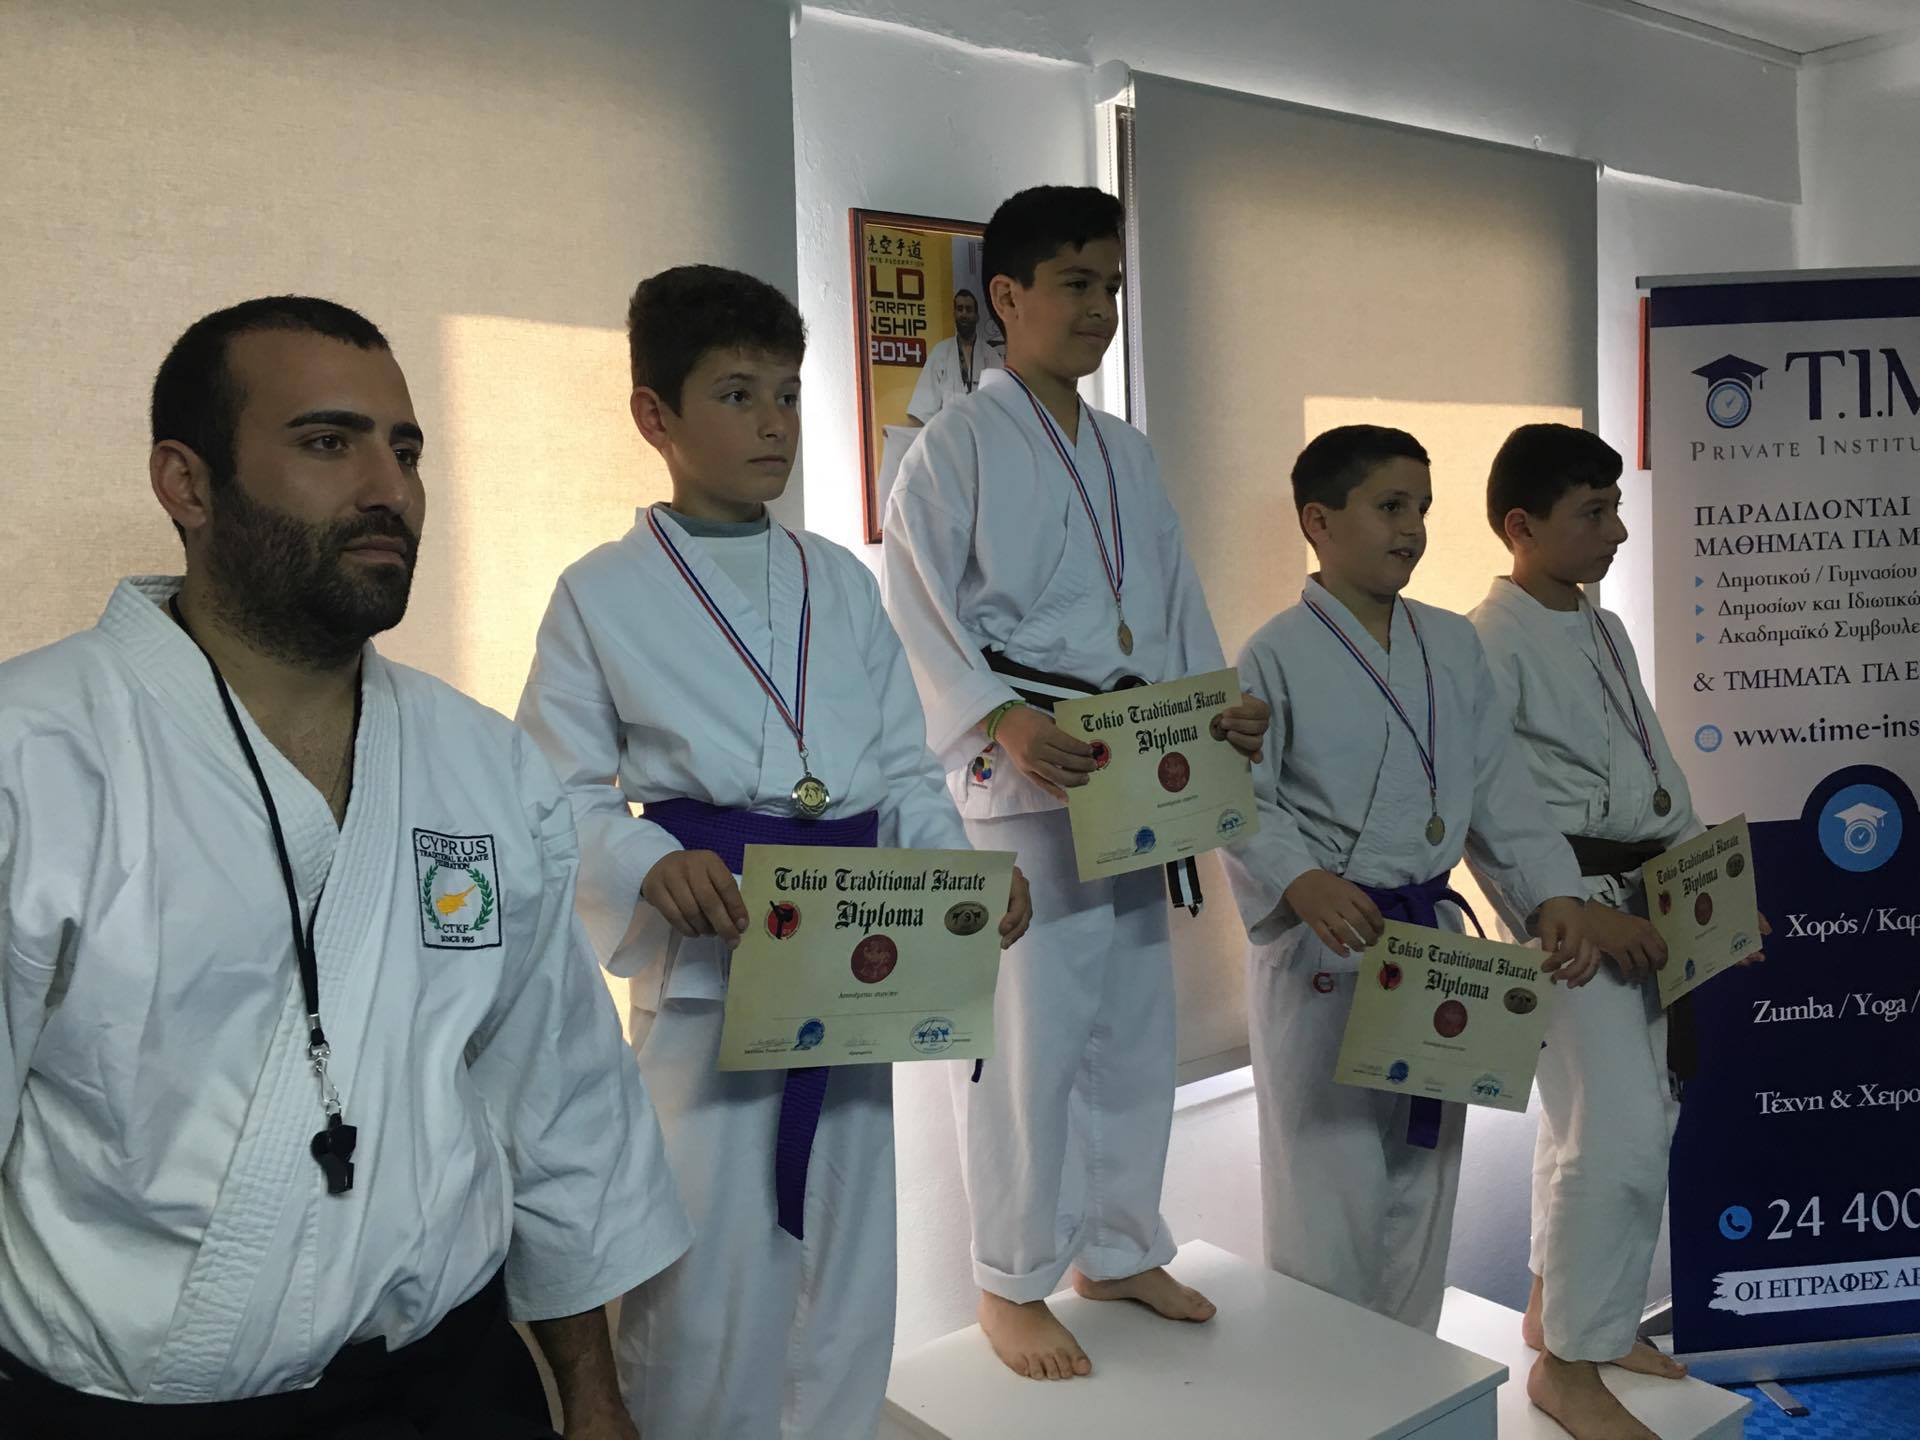 Ο Σύλλογος Παραδοσιακού Καράτε Tokyo Δροσιάς και ο Σύλλογος Παραδοσιακού Καράτε  Ξυλοφάγου οργάνωσαν φιλικούς αγώνες